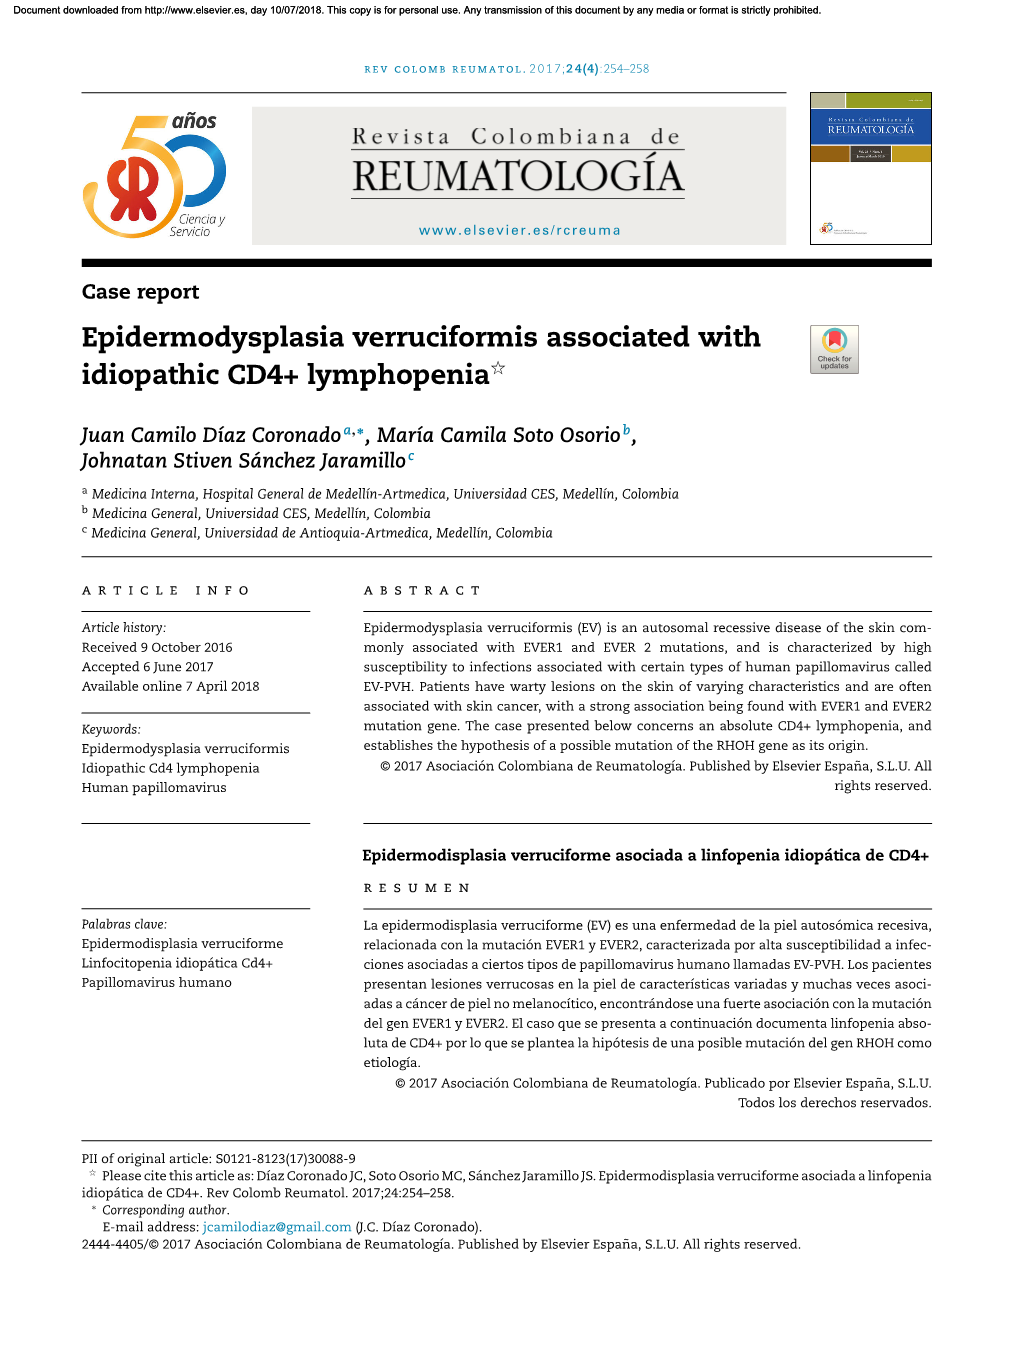 Epidermodysplasia Verruciformis Associated with Idiopathic CD4+